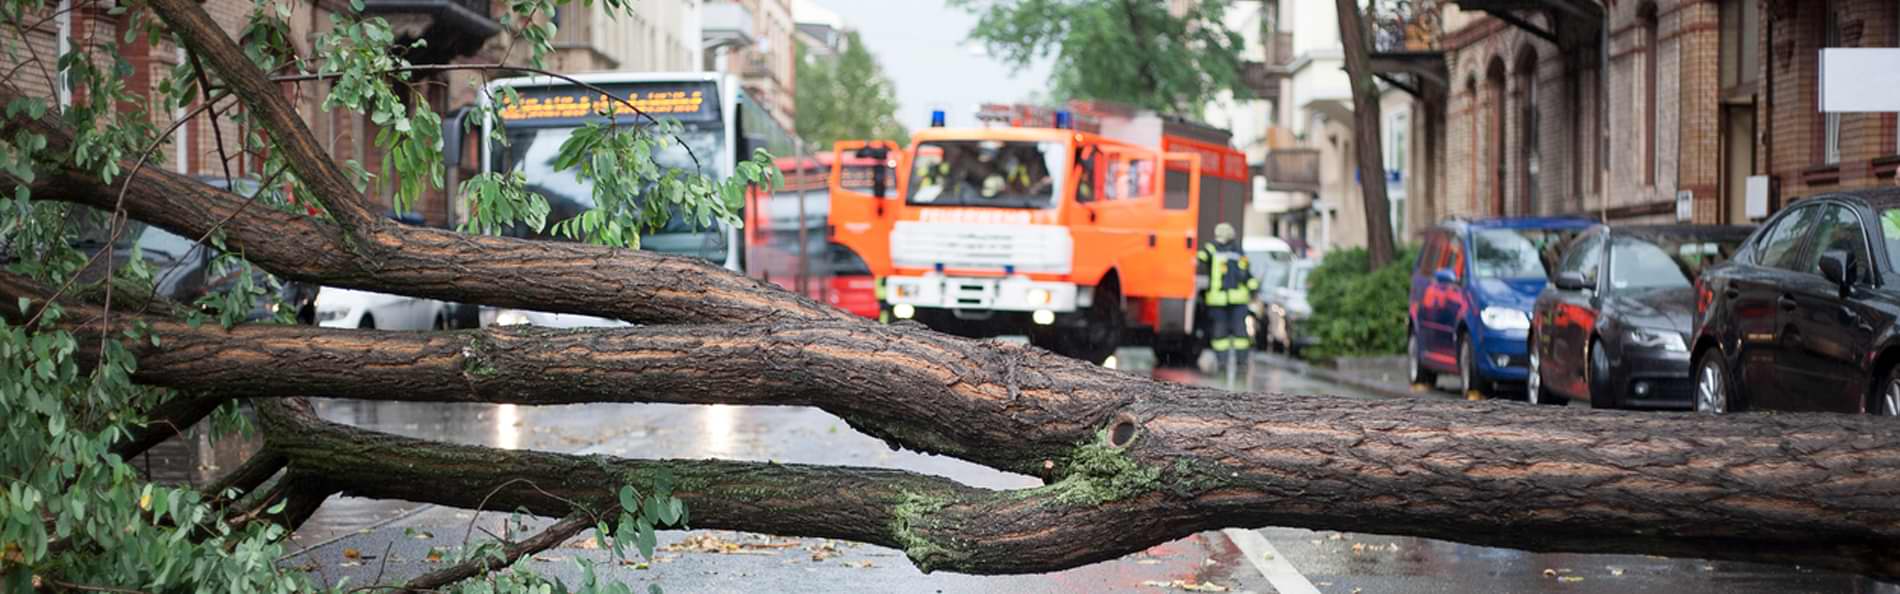 Ein umgestürzter Baum auf einer Straße, dahinter ein Fahrzeug der Feuerwehr.